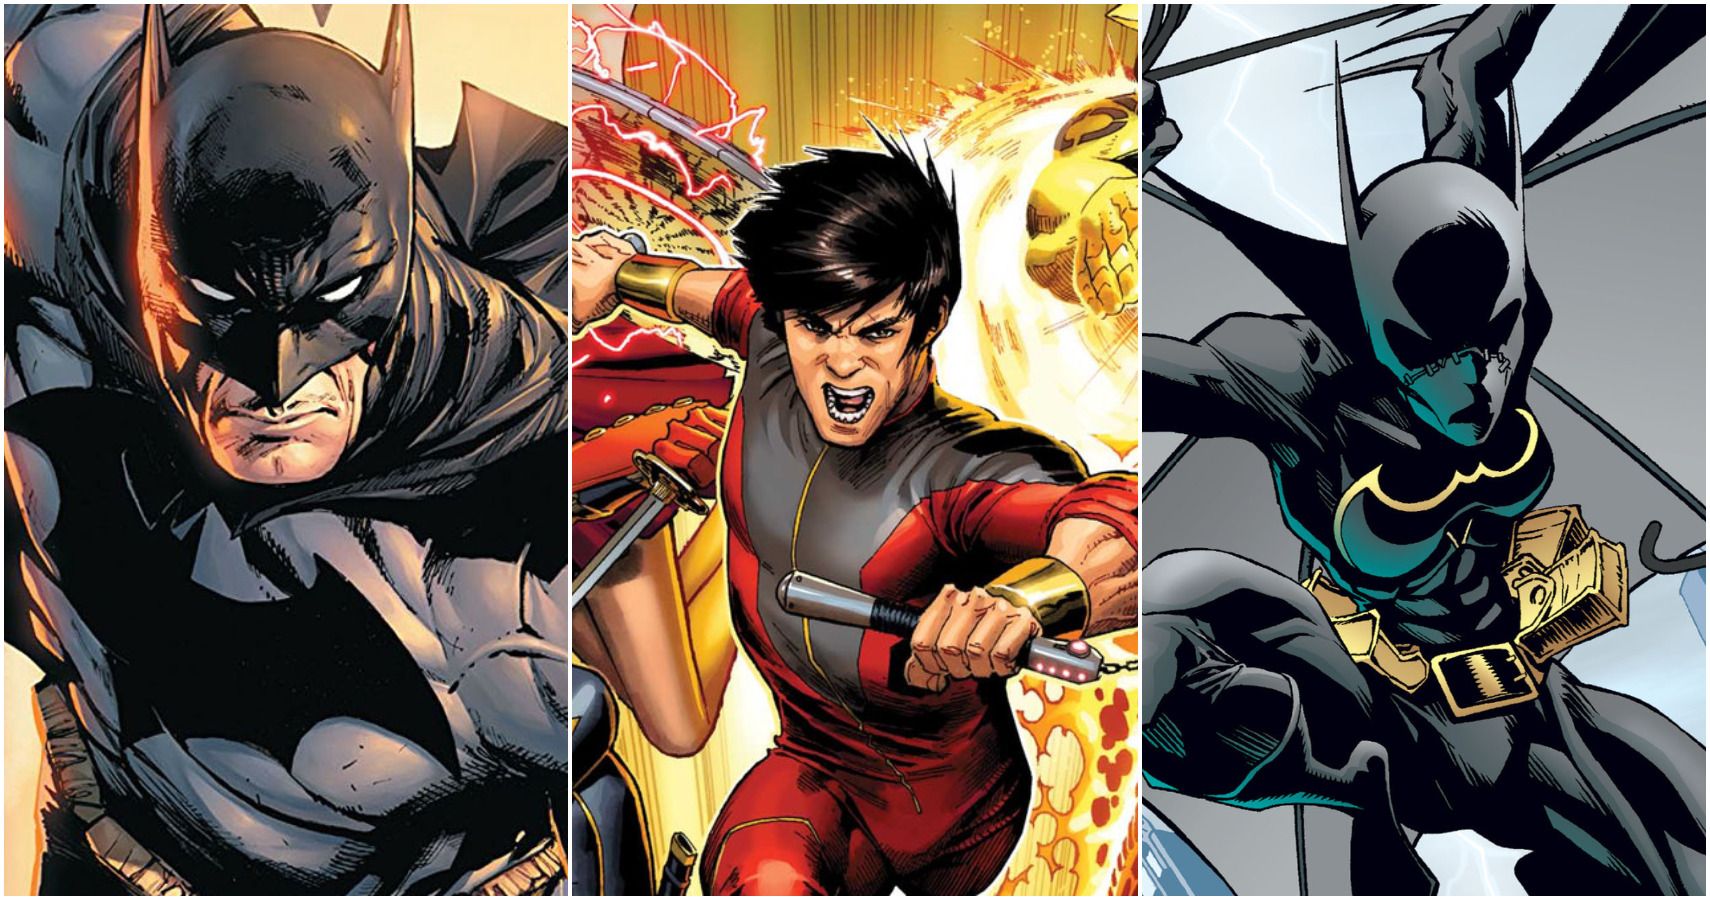 Shang-Chi vs DC heroes